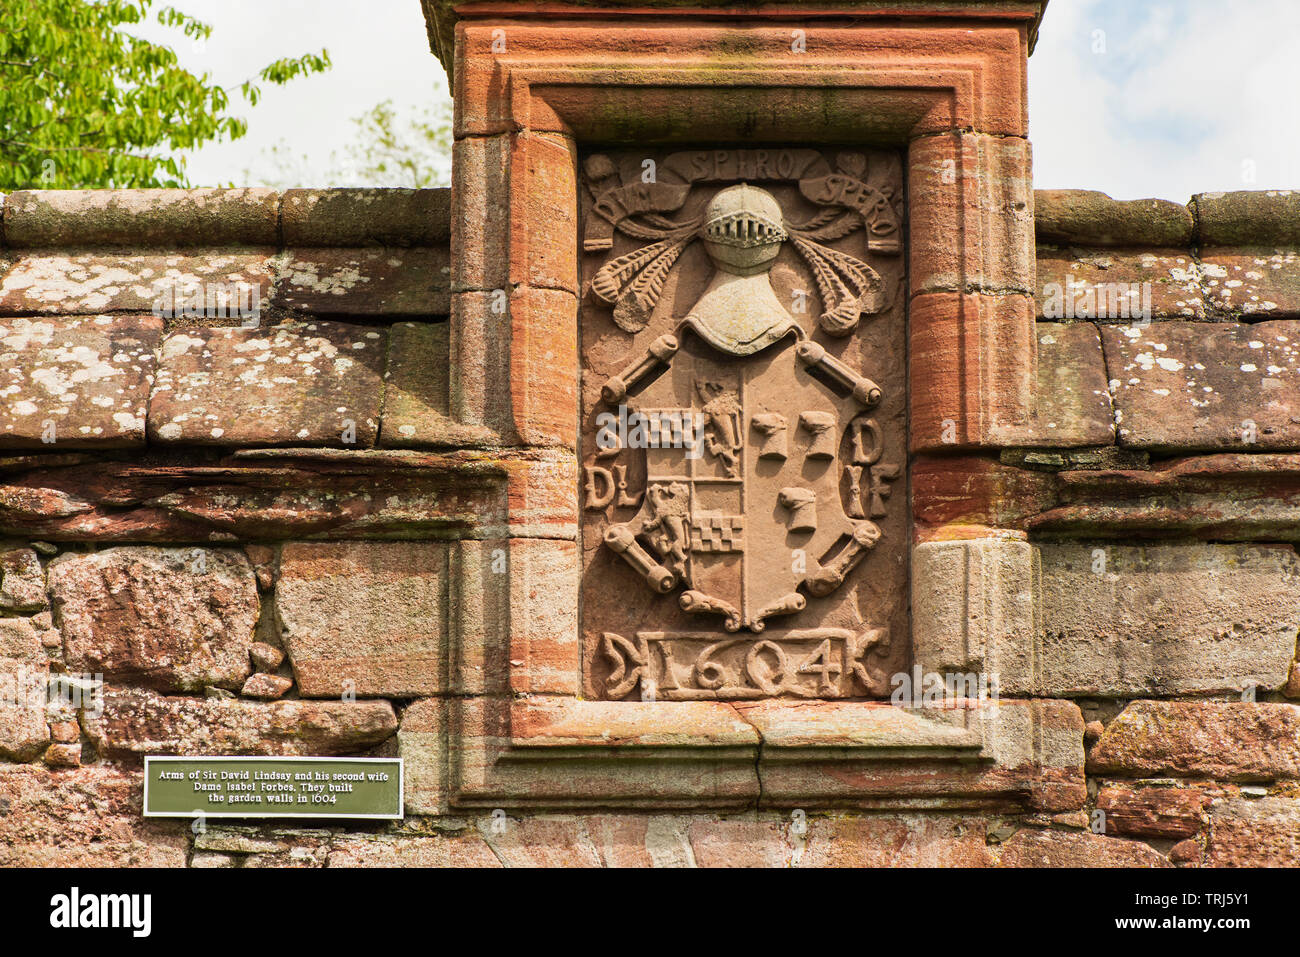 Edzell Castle, Angus, Escocia. El elaborado jardín amurallado fue creada en 1604. Los brazos (por encima de la puerta del jardín) de Sir David Lindsay y su segundo Foto de stock